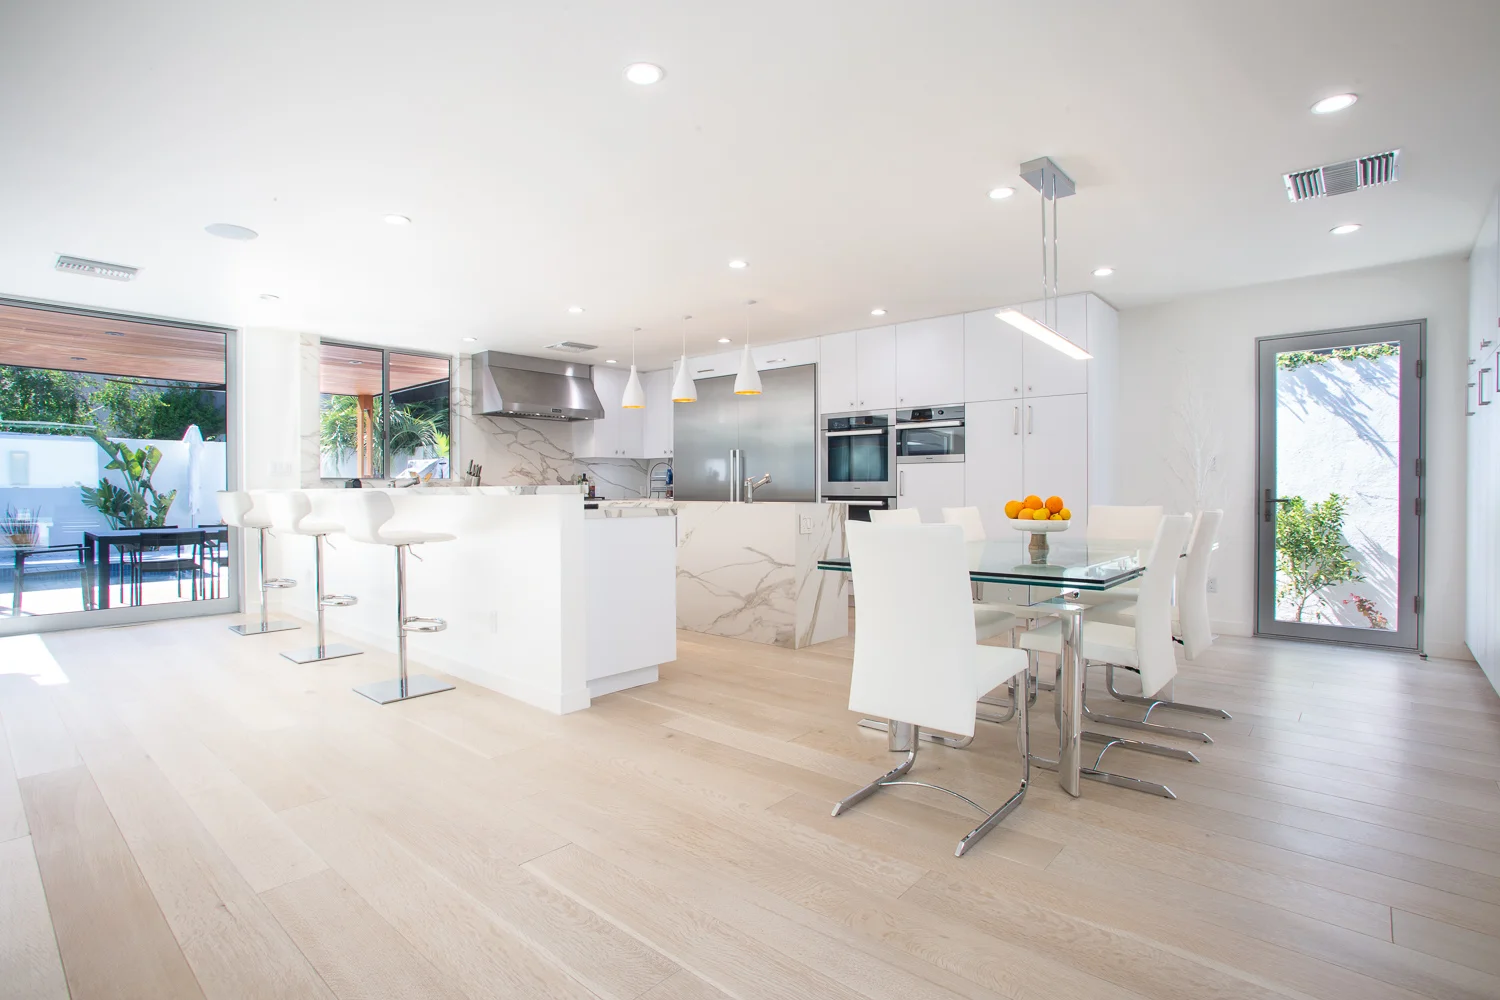 High end kitchen designed & built by Nott & Associates.